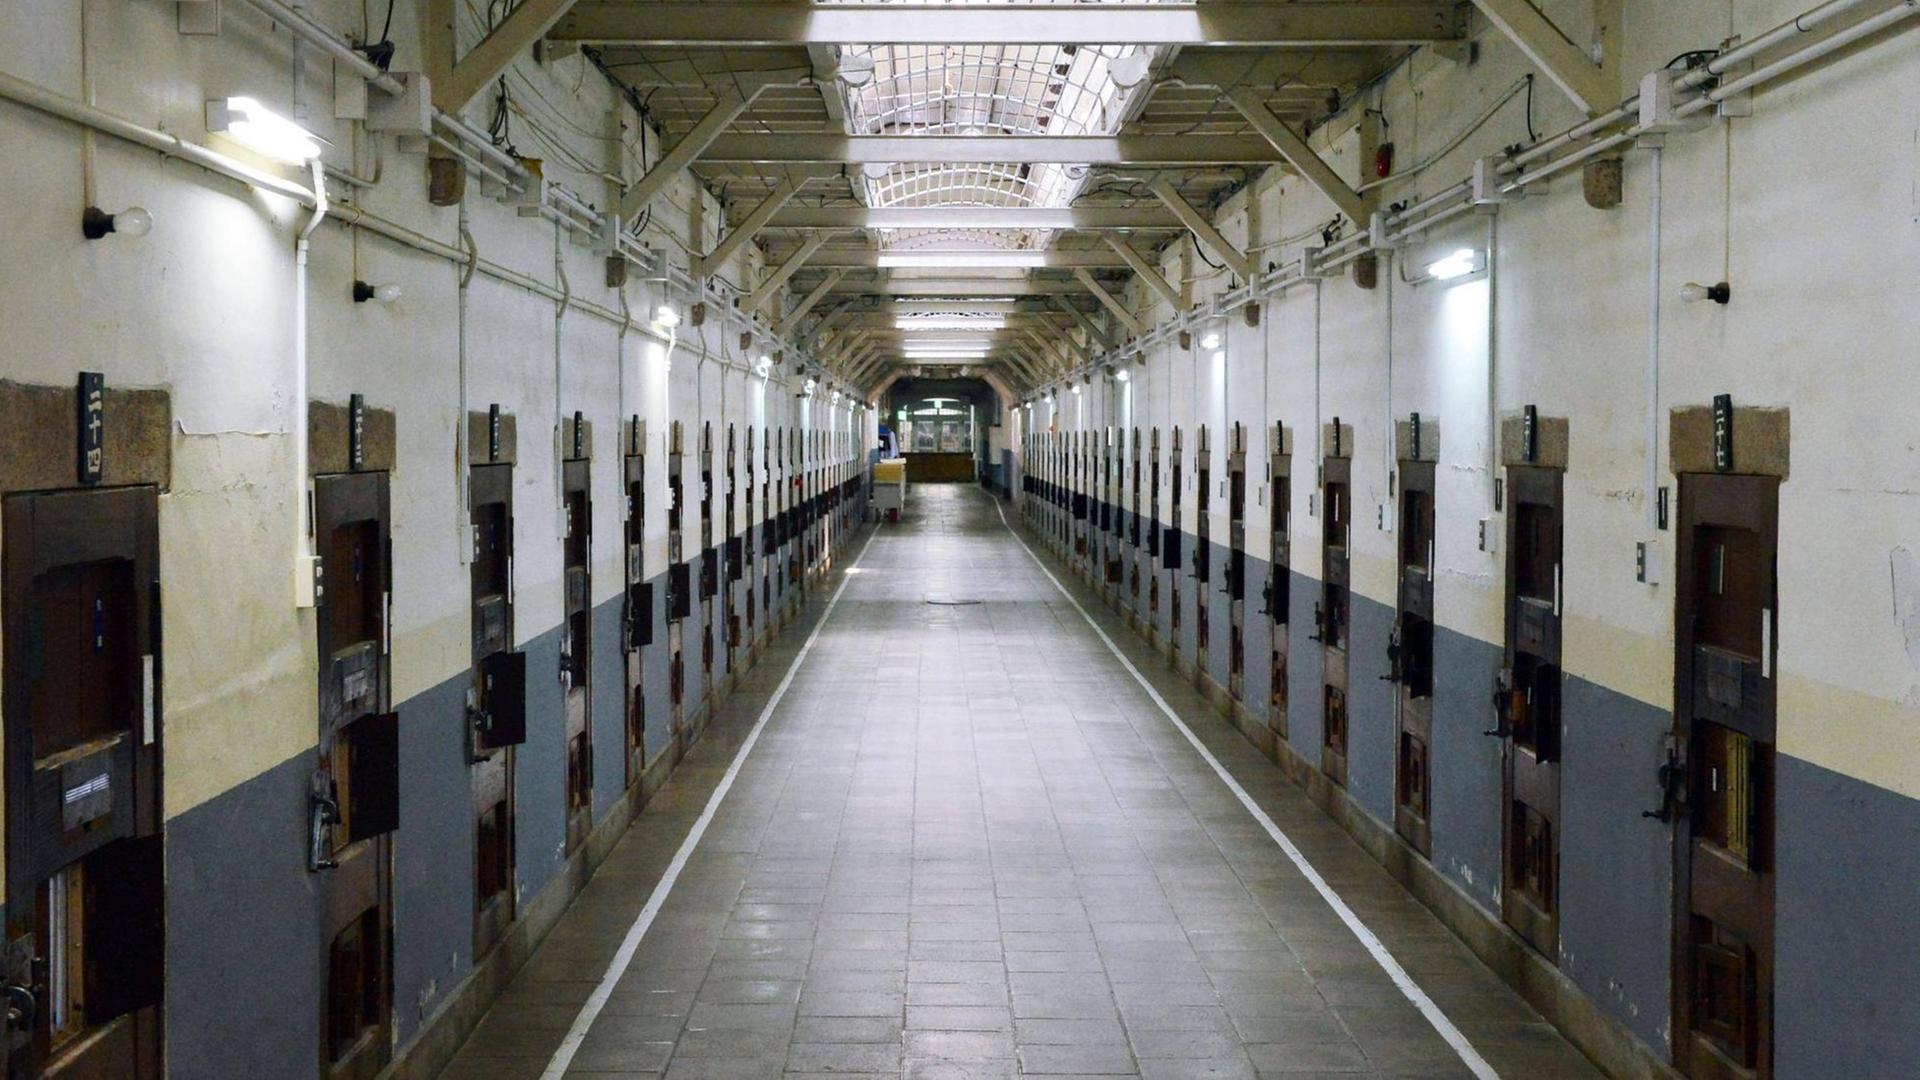 Flure des Meiji Era Juvenile Gefängnisses in Nara/Japan. Das Gefängnis wurde 1908 erbaut und soll nach seiner Schließung ggf. zu einem Hotel umgebaut werden.